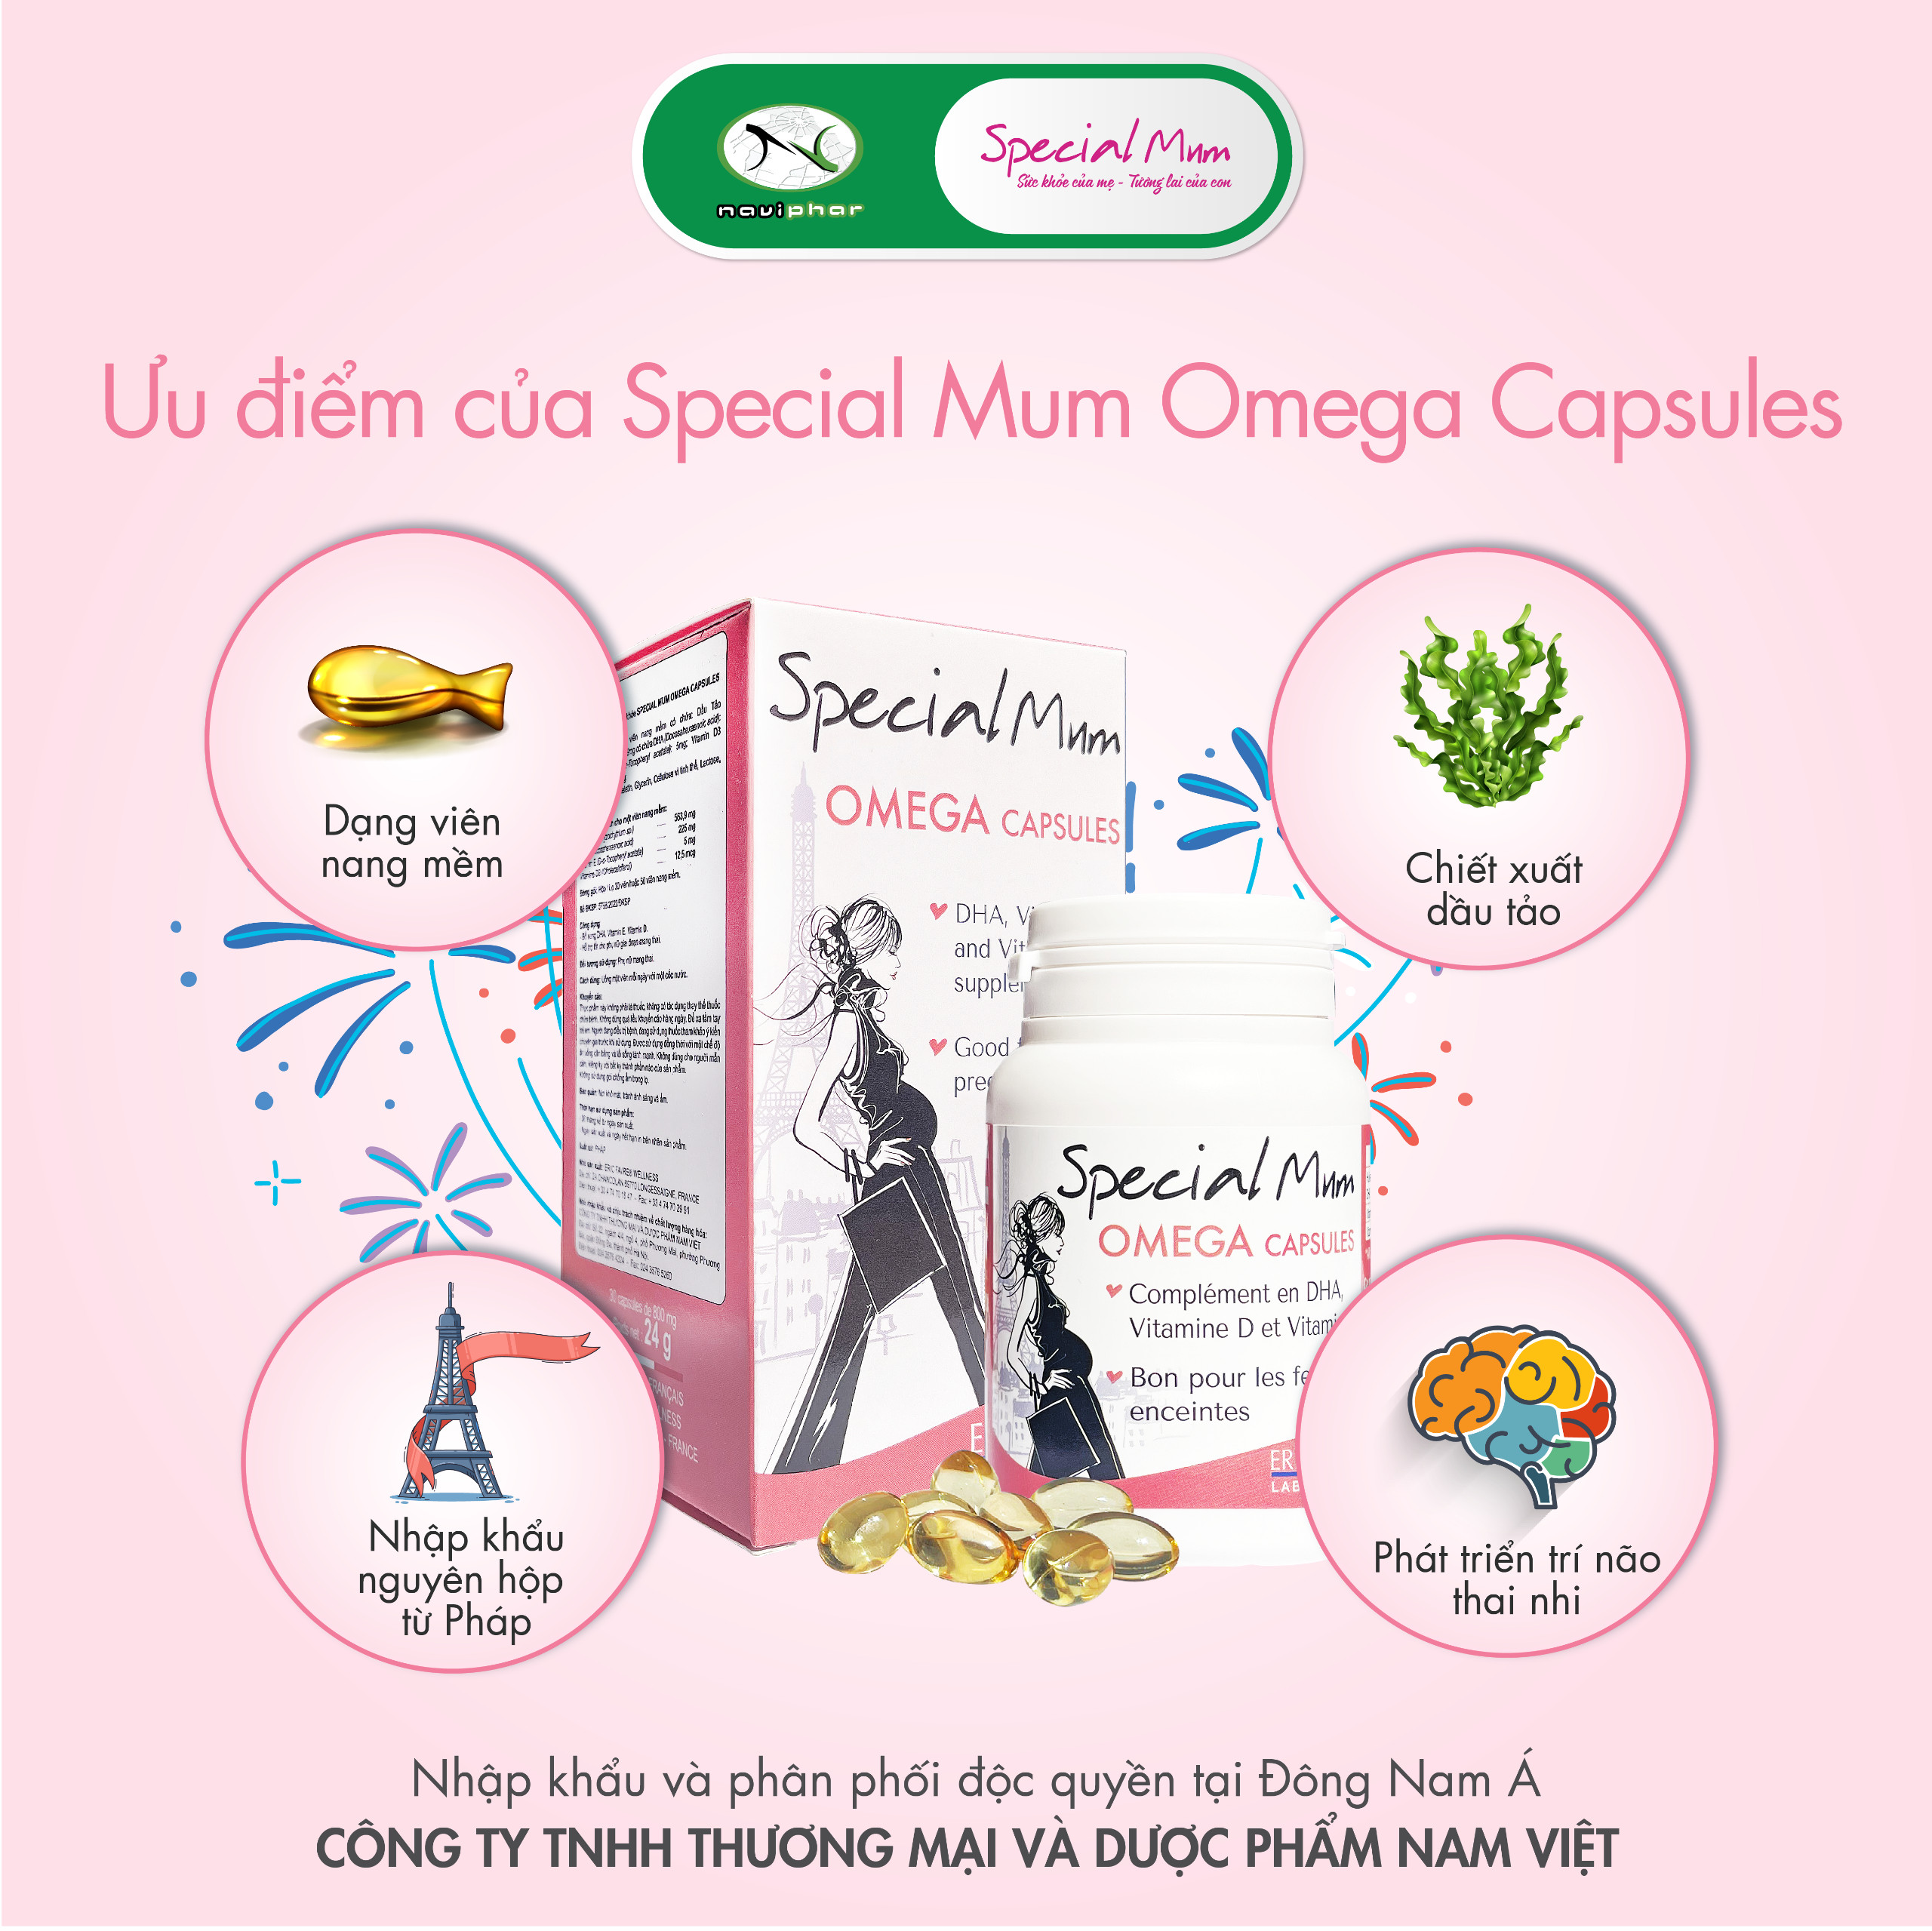 TPBVSK Special Mum Omega Capsules - DHA chiết xuất thực vật [Nhập khẩu Pháp]